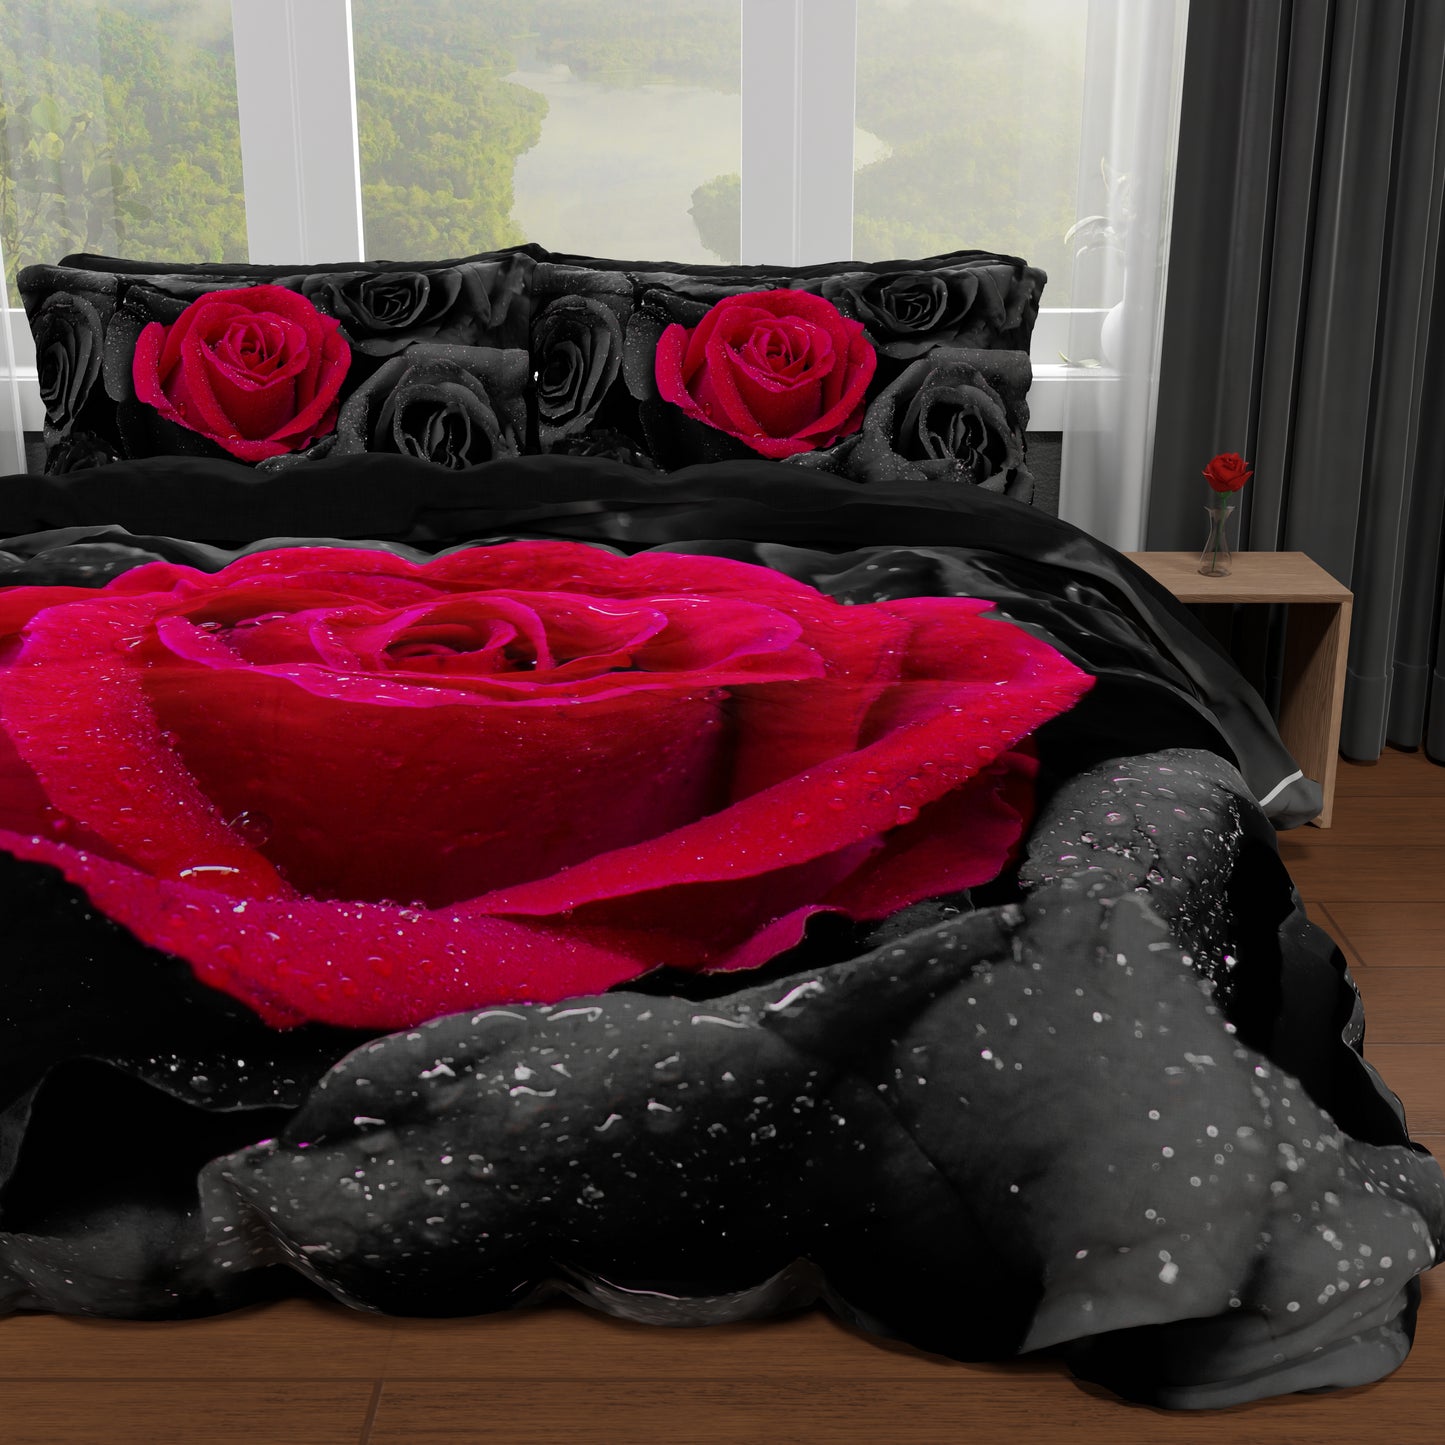 Housse de couette double, simple, queen size, roses noires